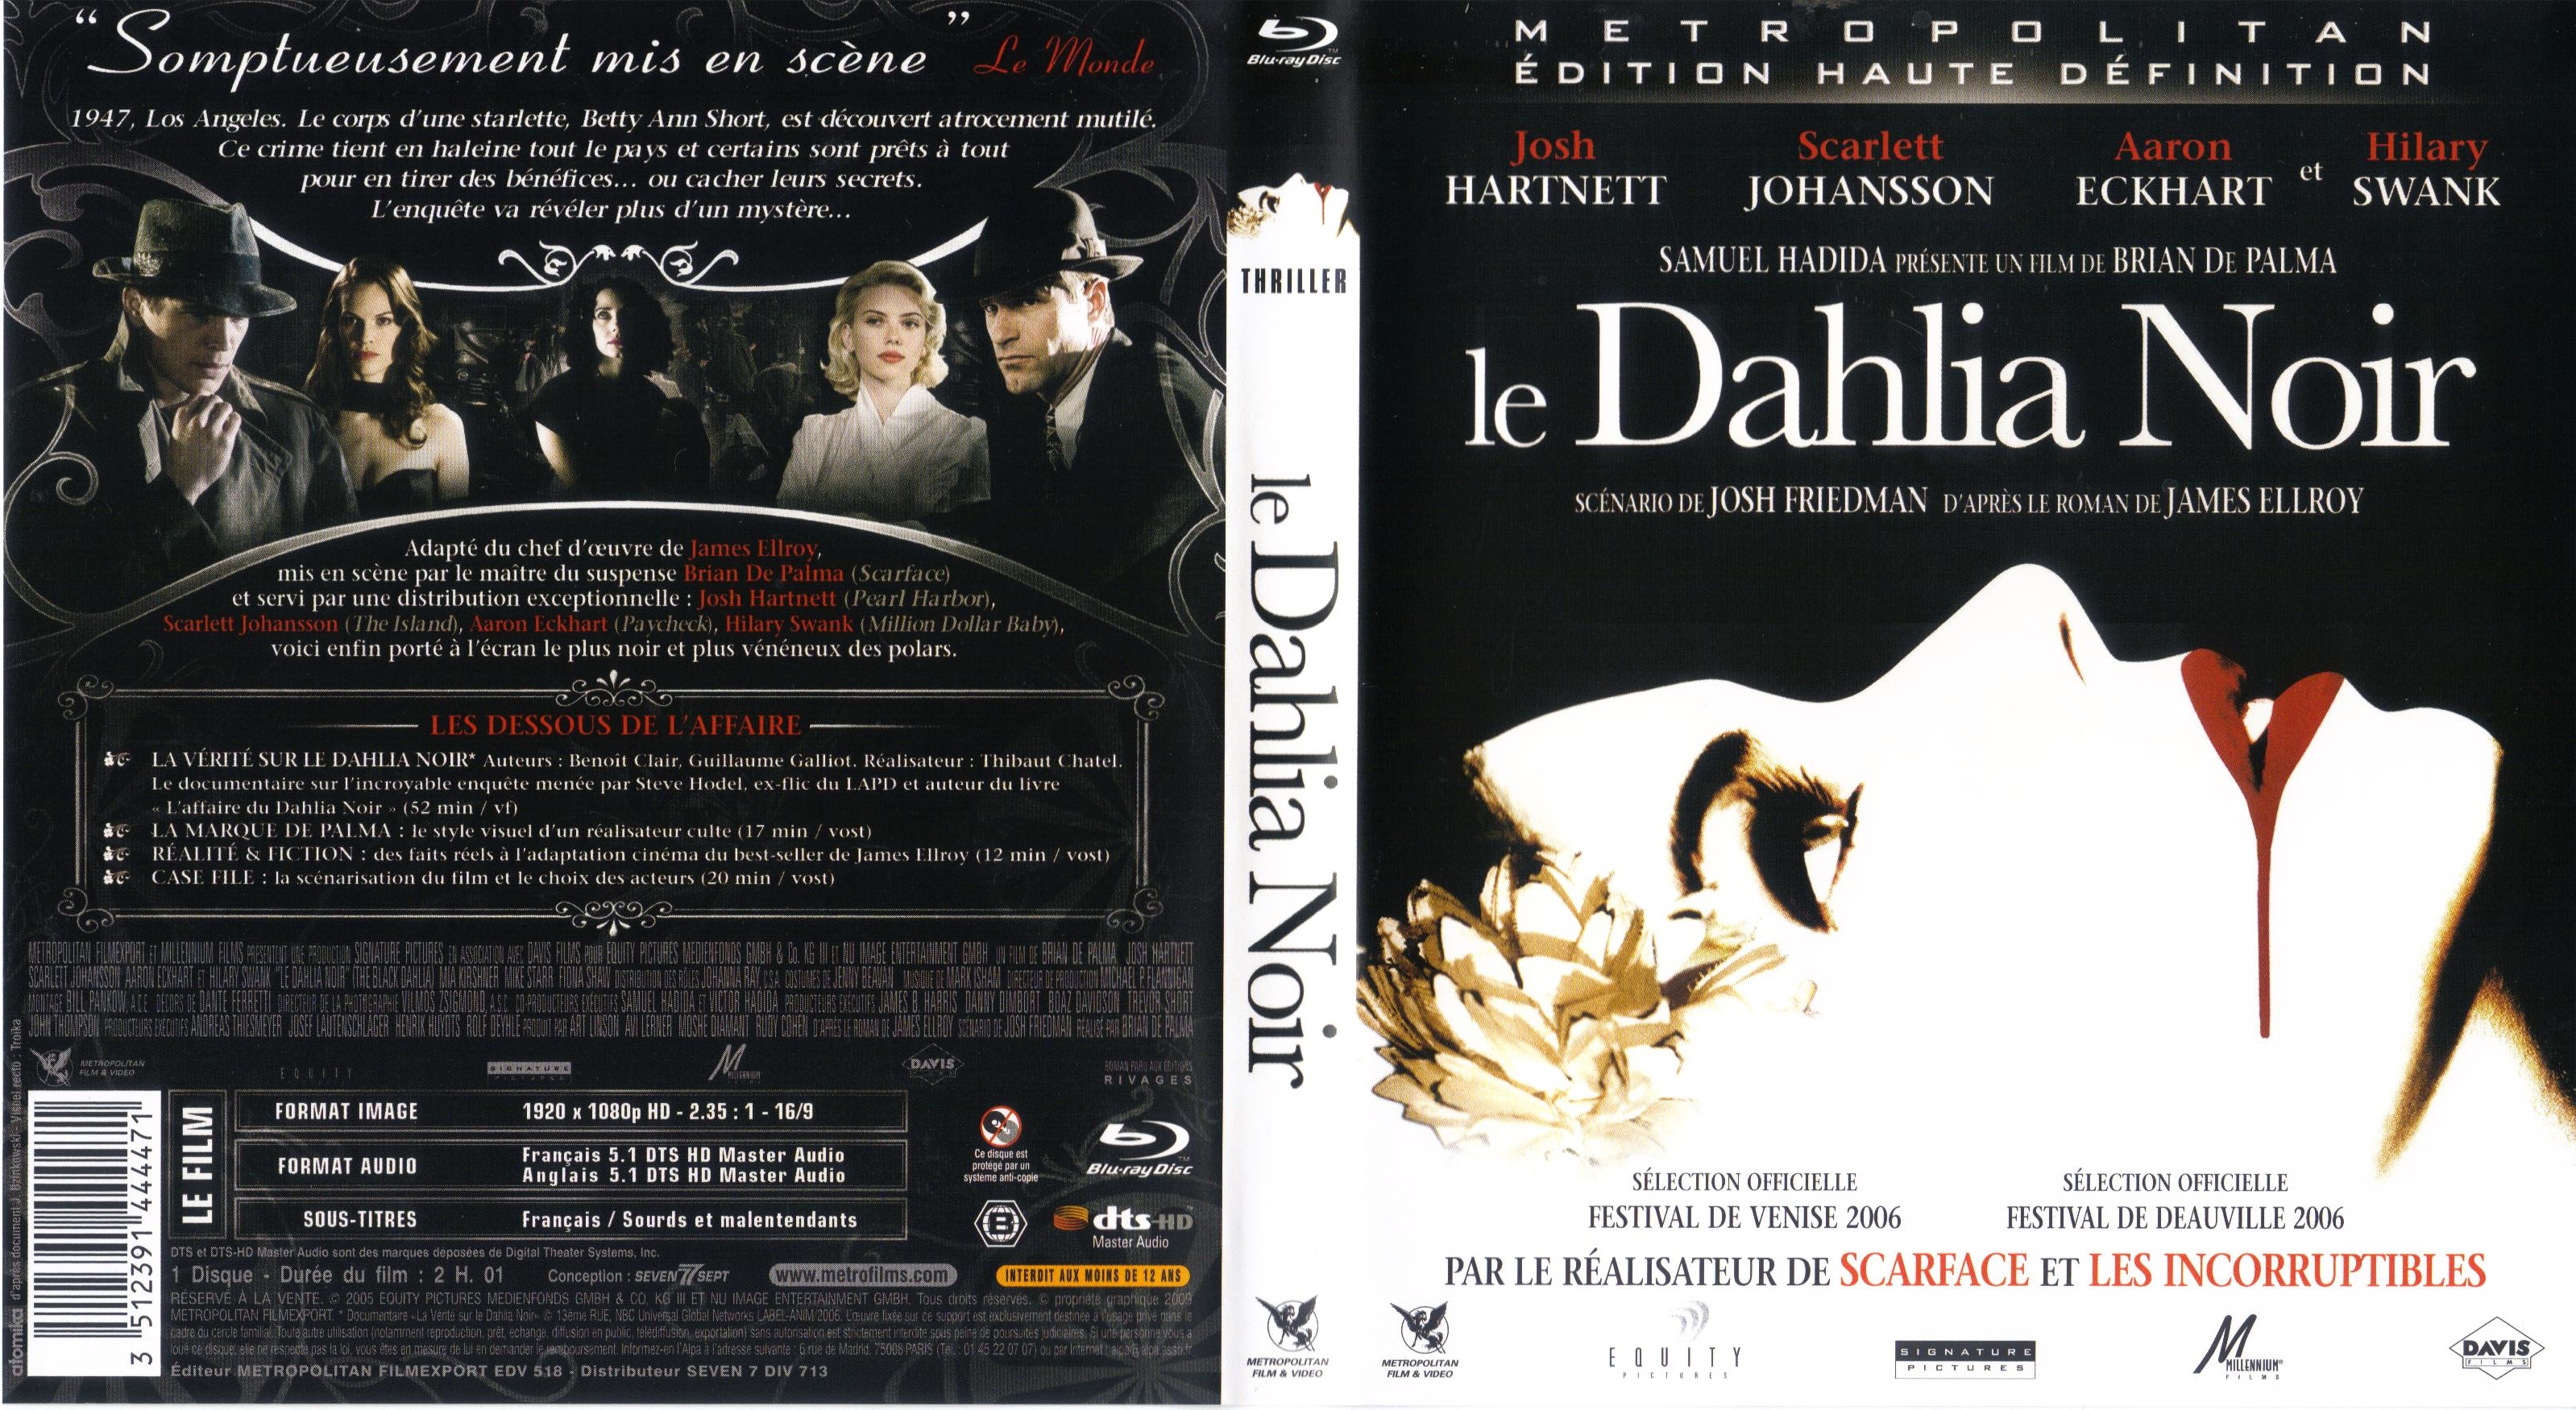 Jaquette DVD Le dahlia noir (BLU-RAY)